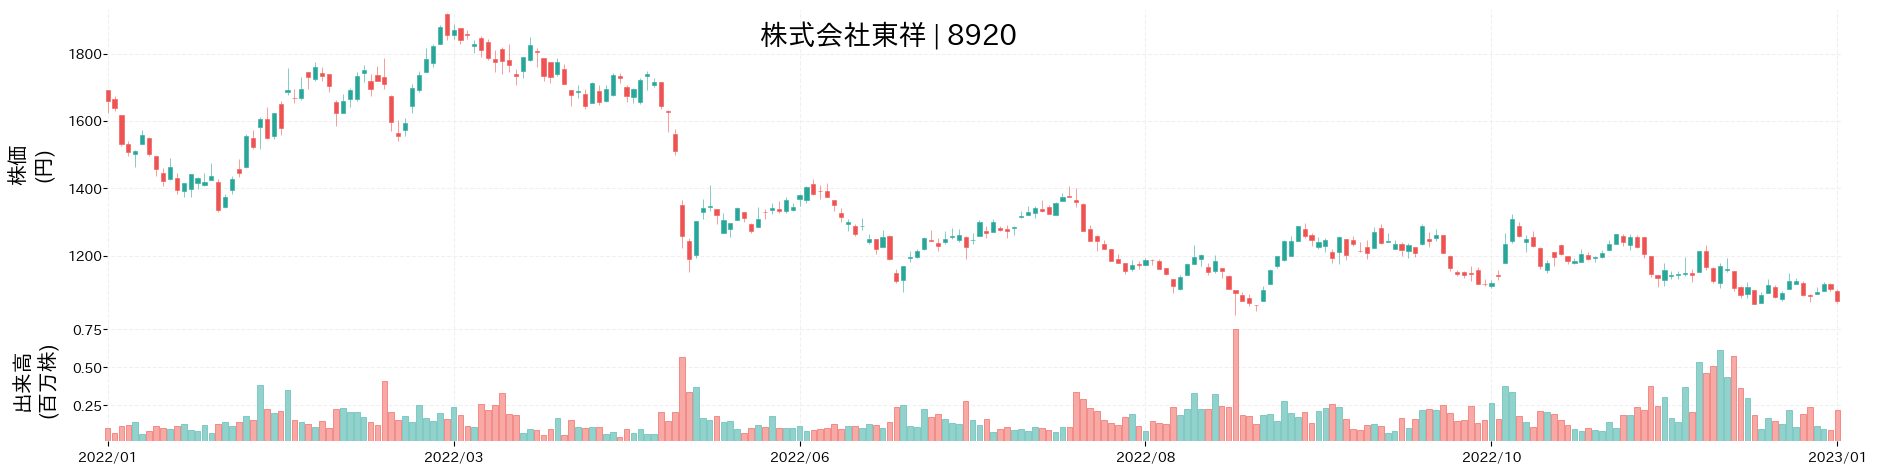 東祥の株価推移(2022)